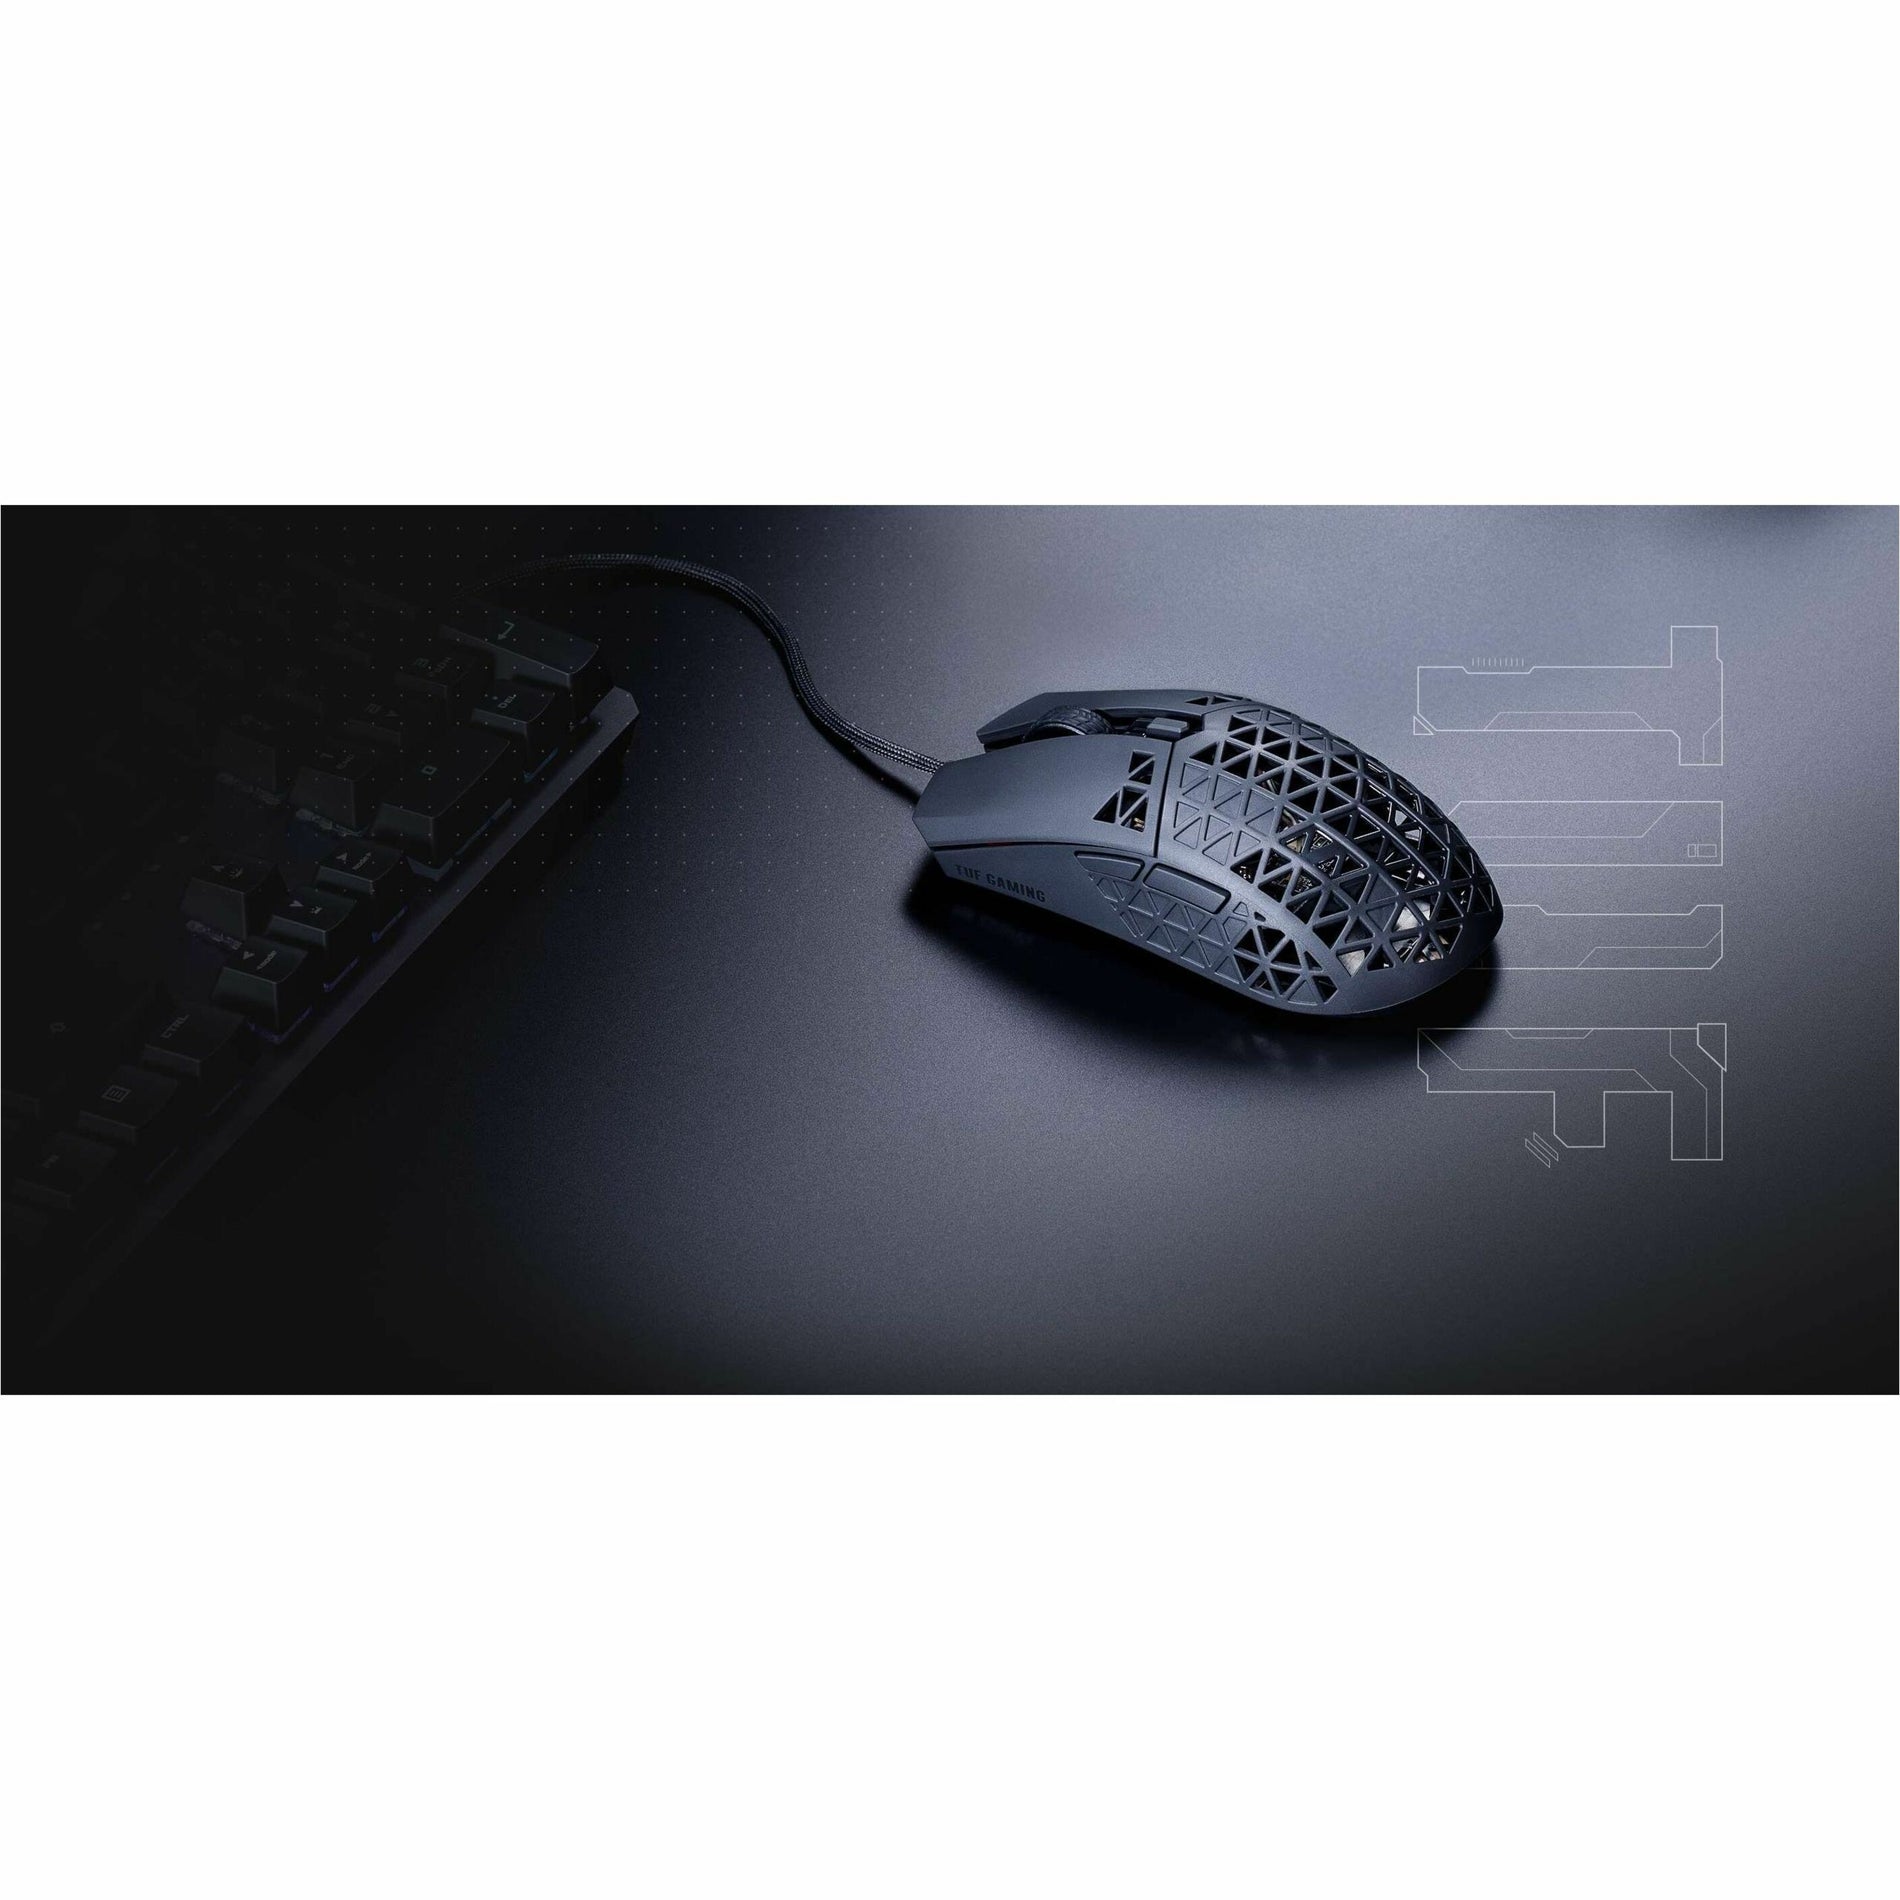 Asus TUF M4 Air Gaming Mouse (Souris de jeu Asus TUF M4 Air)